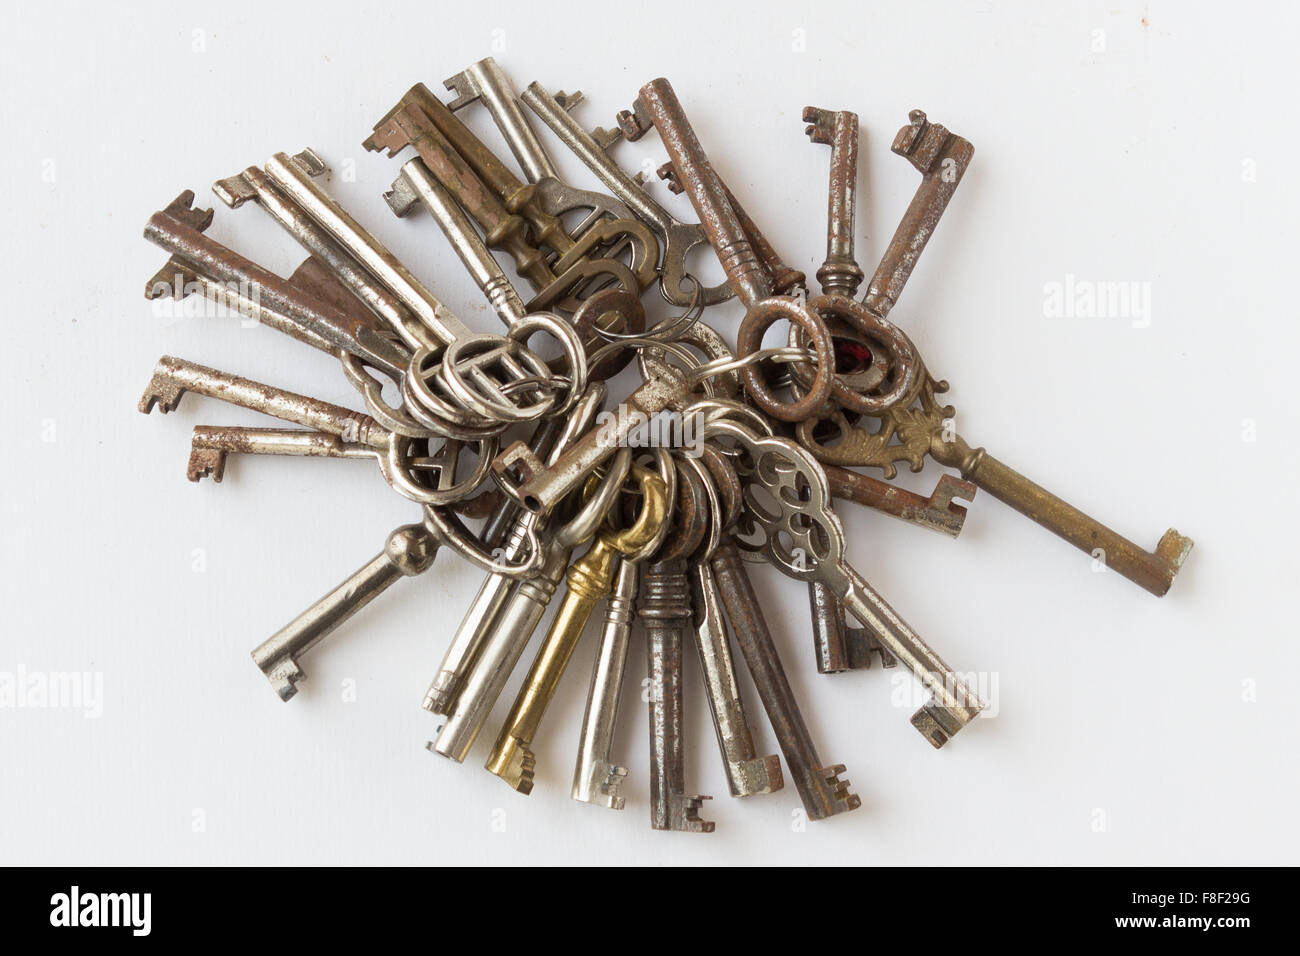 Bande d'anciennes clés / porte-clés isolé sur fond blanc Banque D'Images